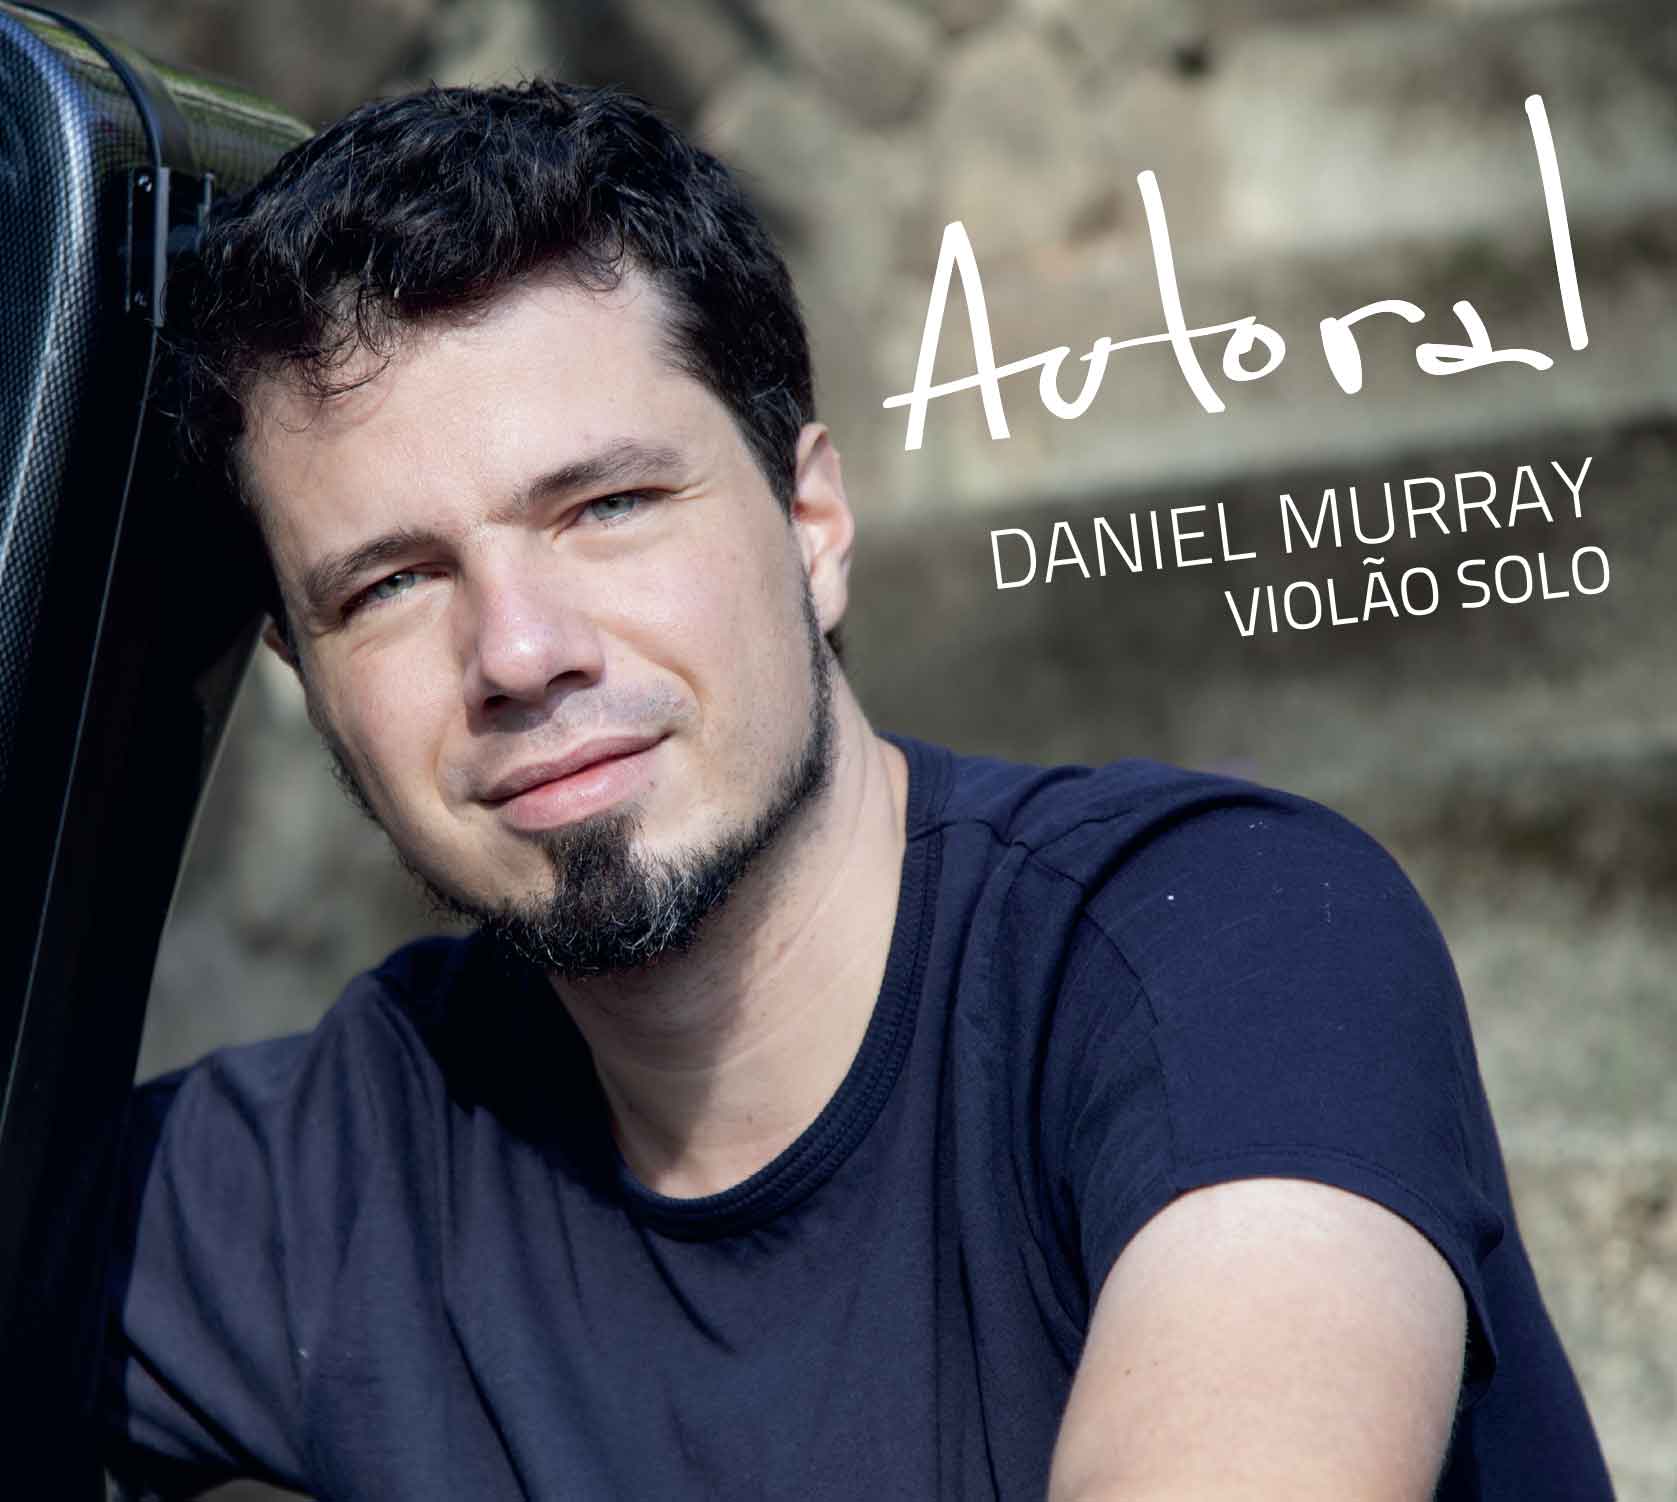 CD AUTORAL- Daniel Murray - violão solo